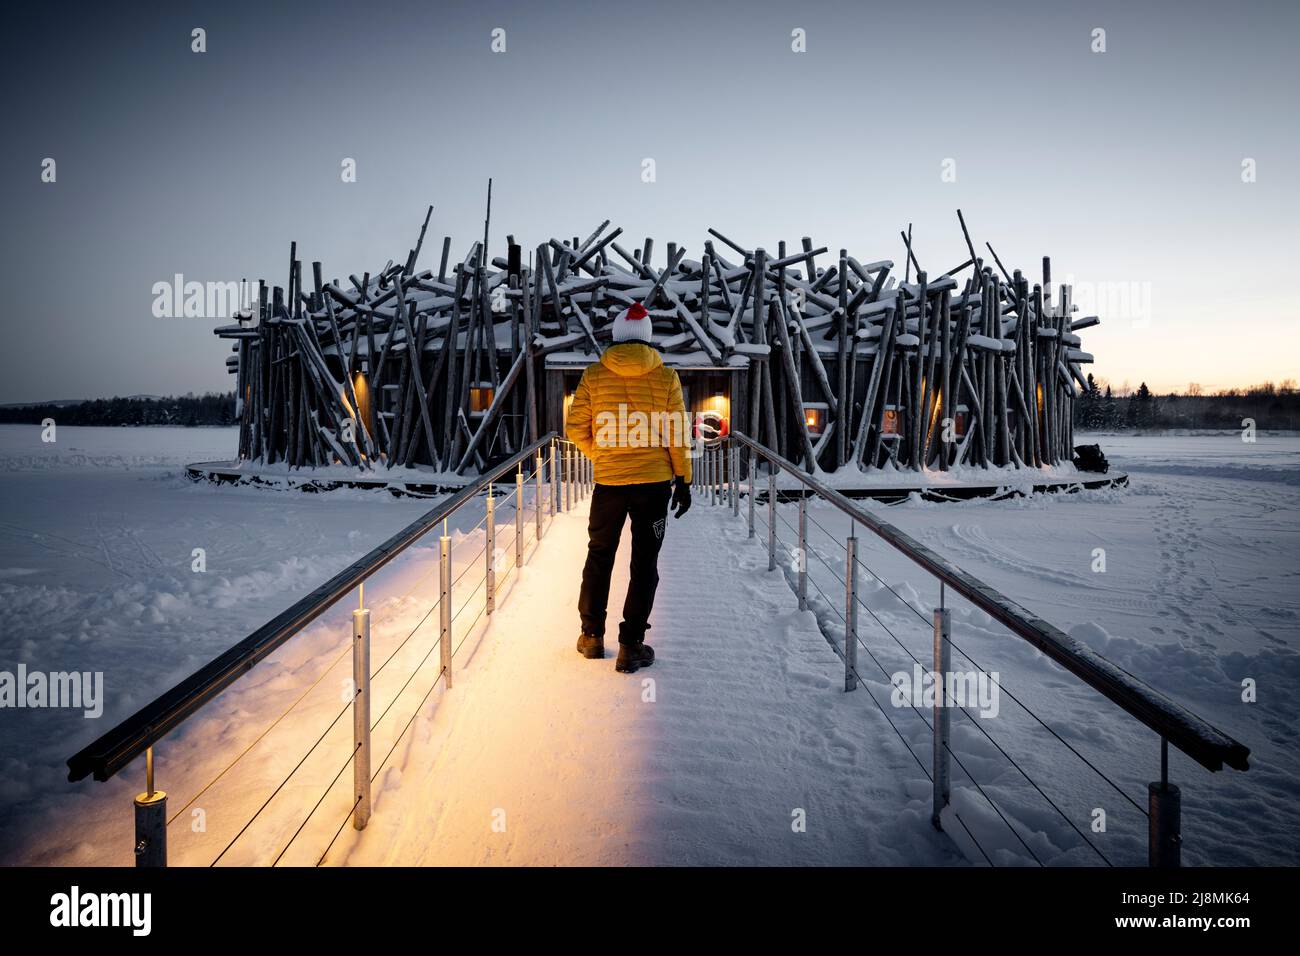 Persona admirando el edificio principal circular del Arctic Bath Hotel, hecho con madera de pasarela congelada, Harads, Laponia, Suecia Foto de stock